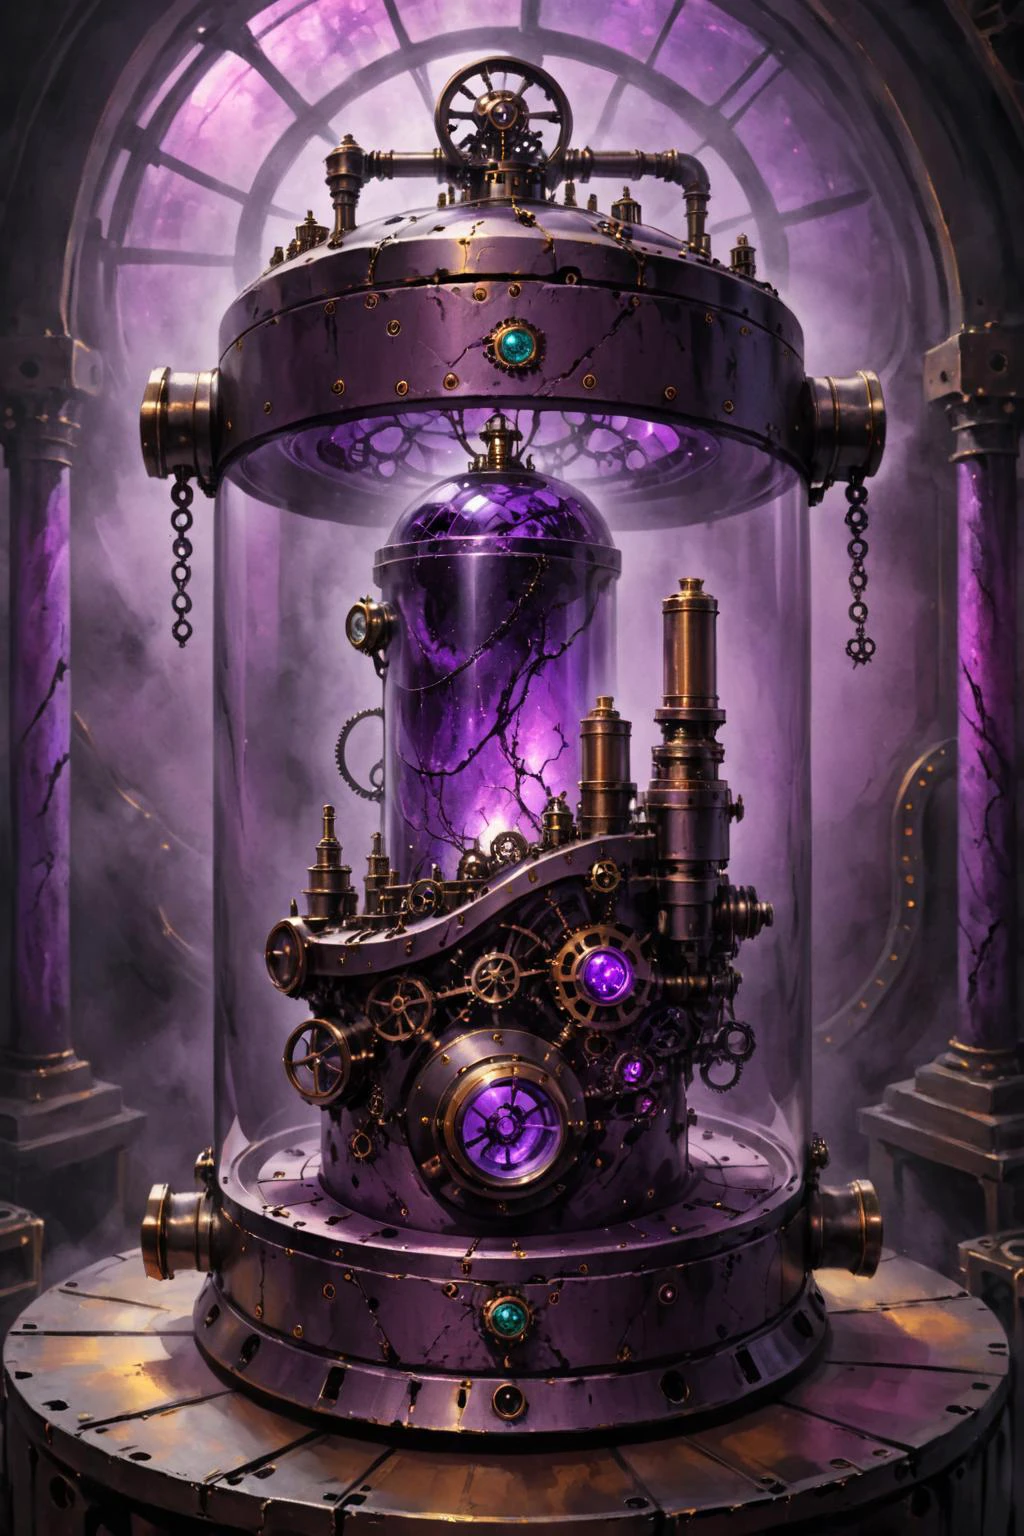 enthaltene Farbe, Hand des Erebos in einem großen Steampunk-Behälter mit (violett getöntes Glas), gemalte Welt,